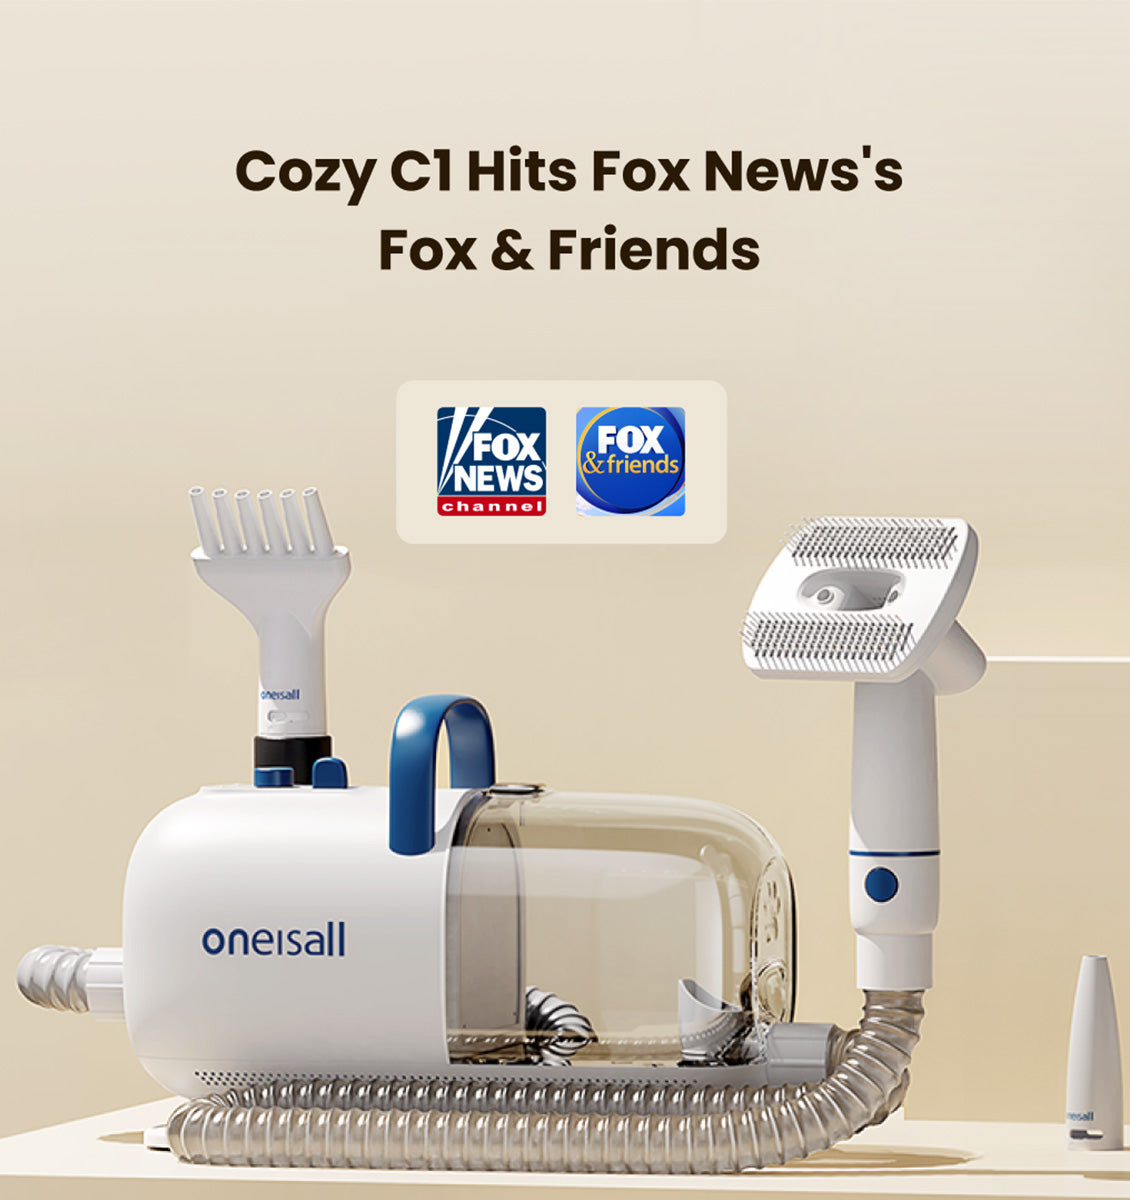 oneisall Cozy C1 Dog Grooming Vacuum Hits Fox News